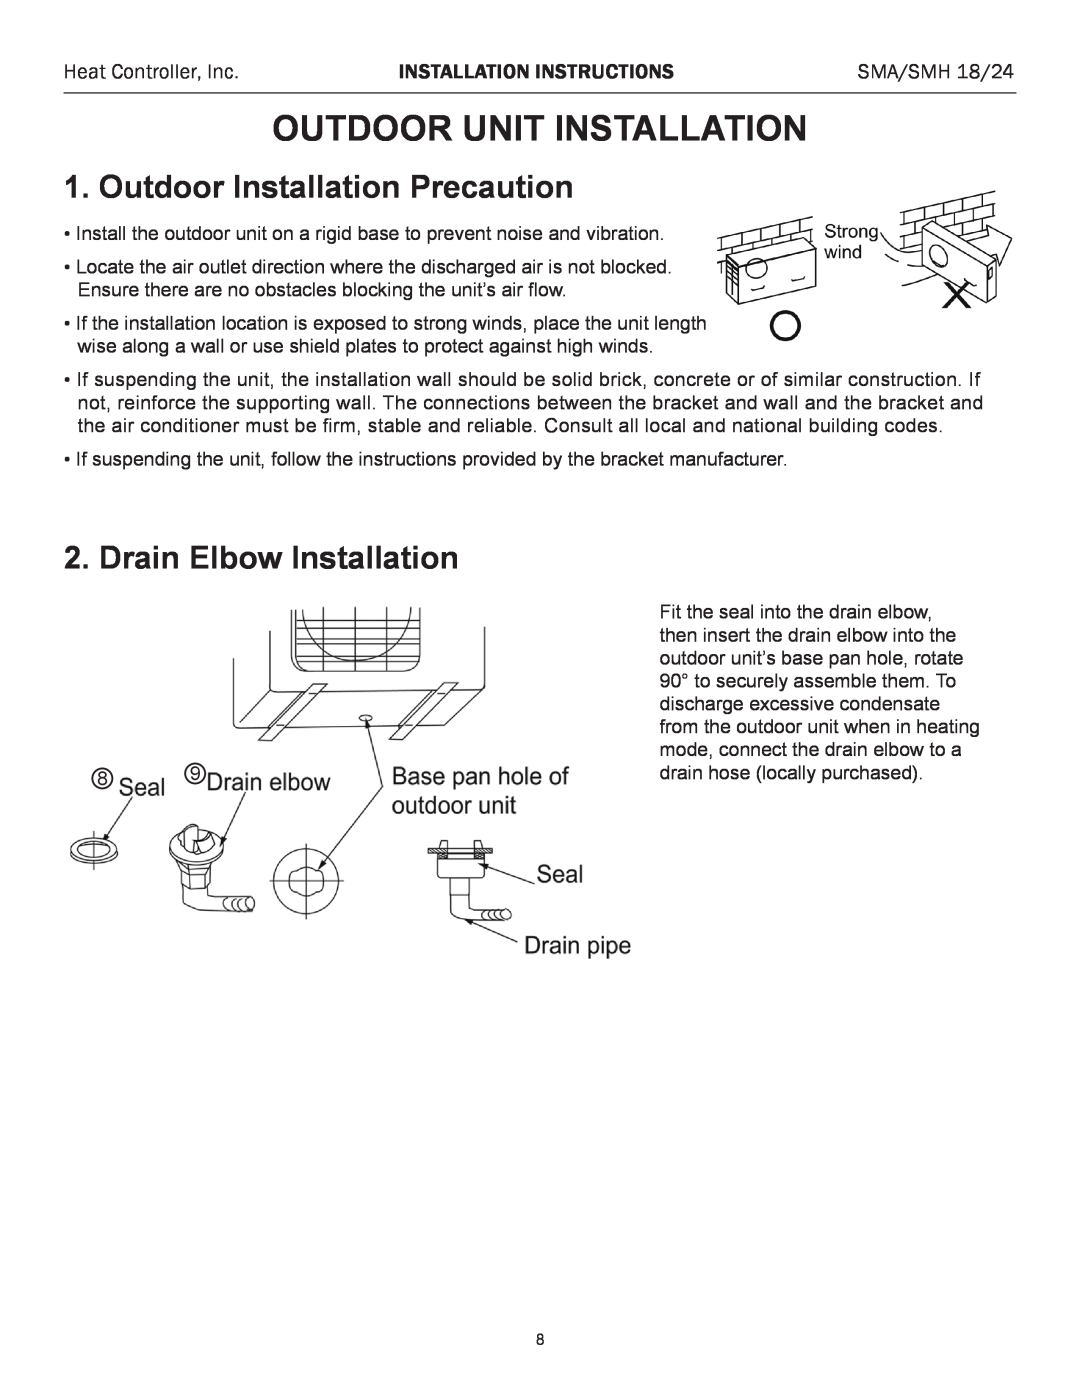 Heat Controller SMA 18 Outdoor Unit Installation, Outdoor Installation Precaution, Drain Elbow Installation, SMA/SMH 18/24 